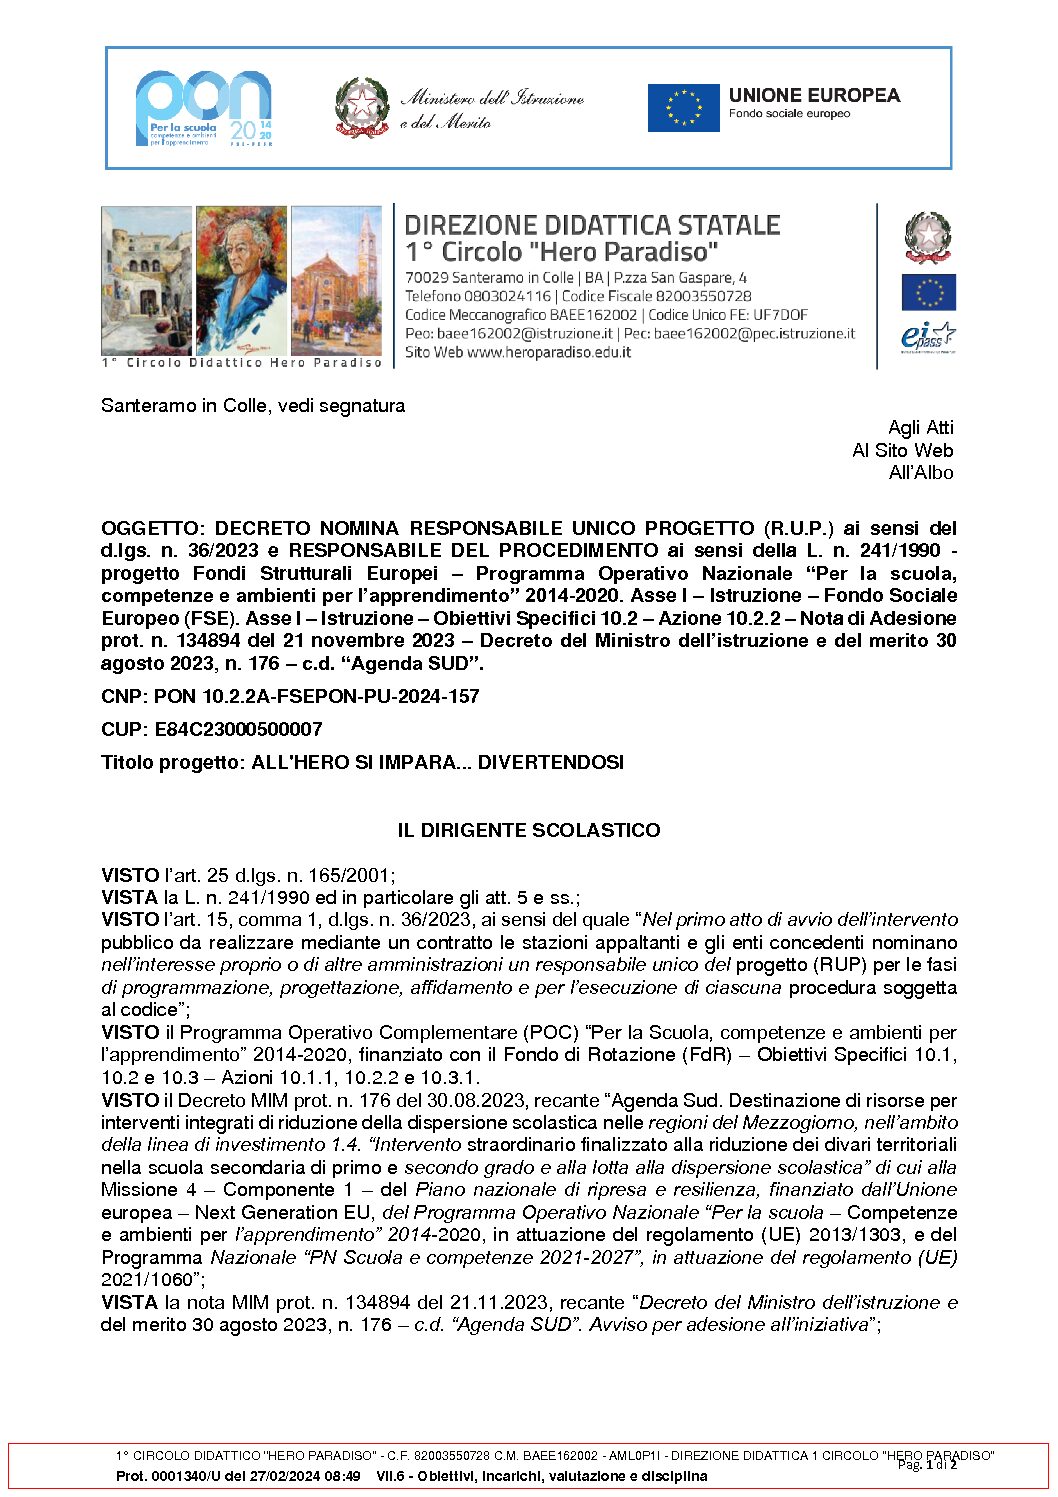 Decreto_nomina_RUP_e_Responsabile_procedimento.pdf.pades